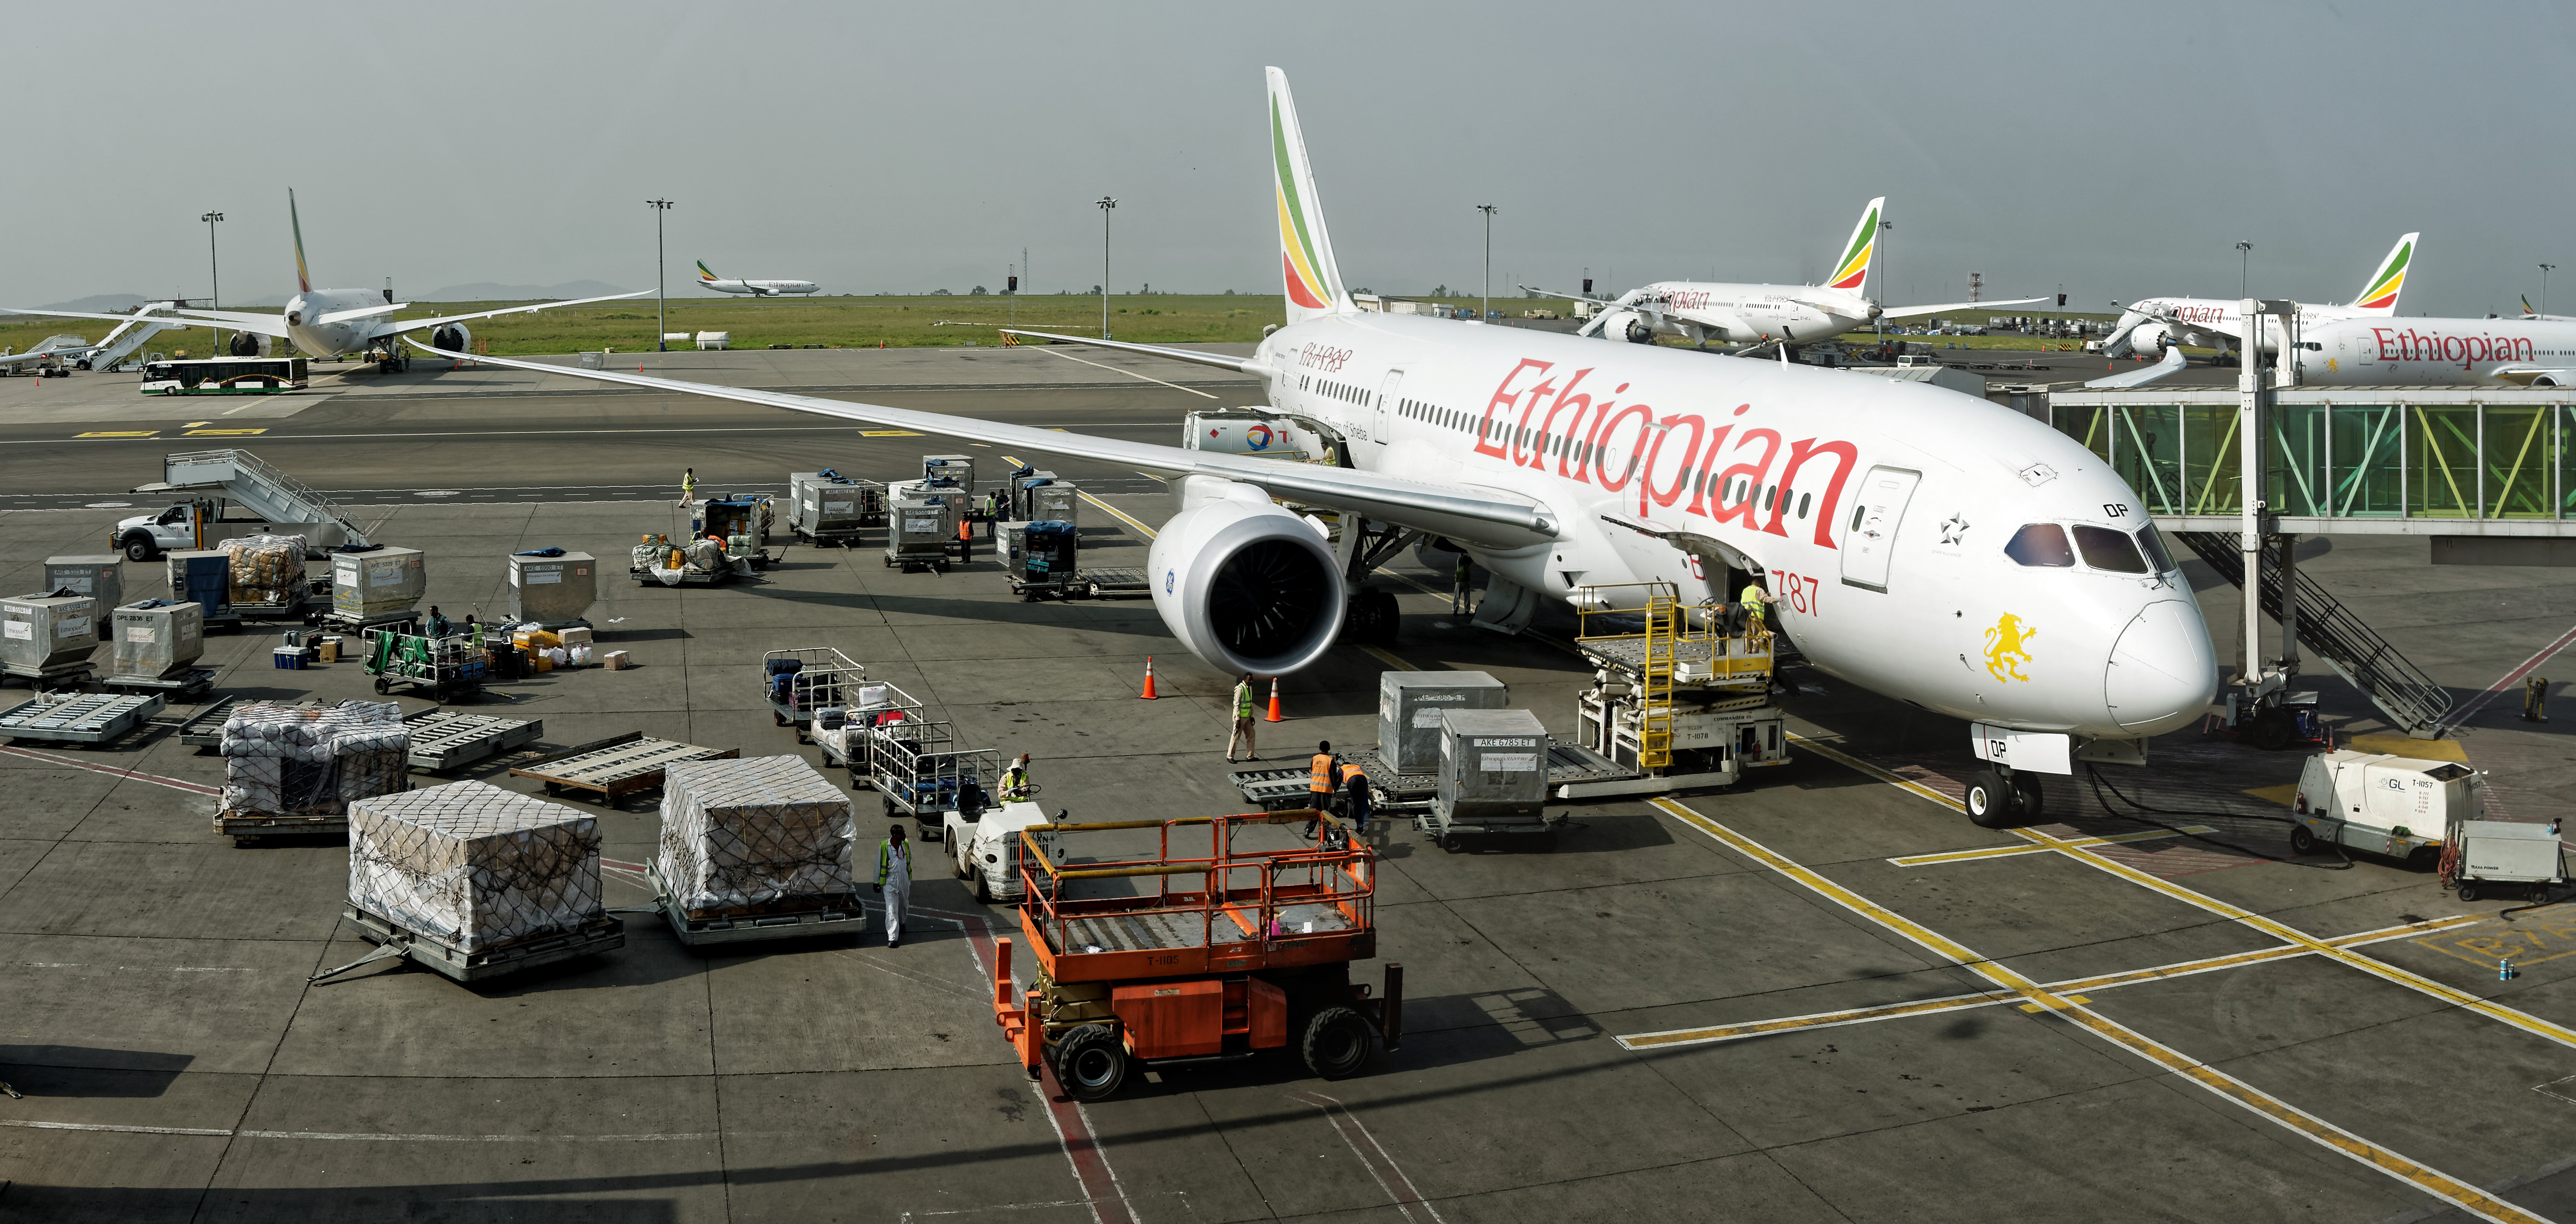 A l'aéroport d'Addis Abeba